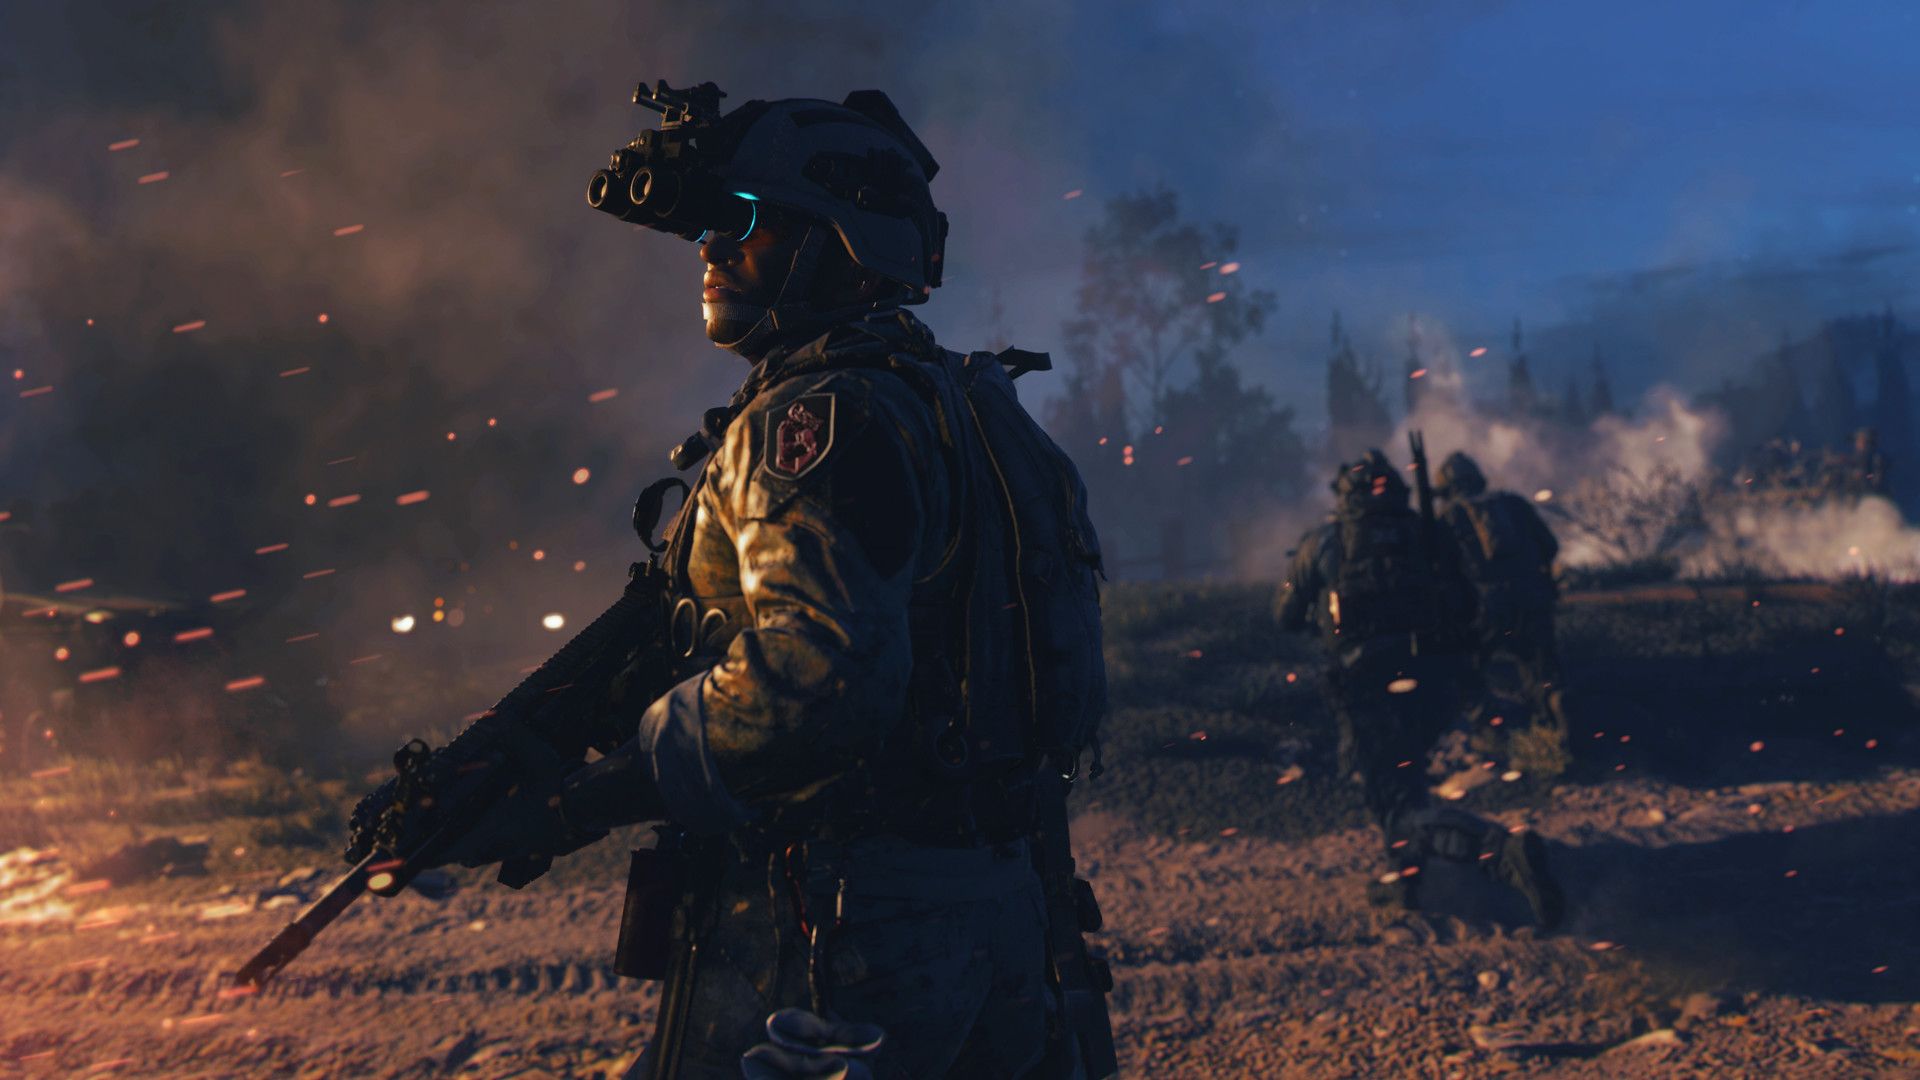 Call of Duty s'associe à cette licence mythique du jeu vidéo pour la saison 4 de Warzone 2